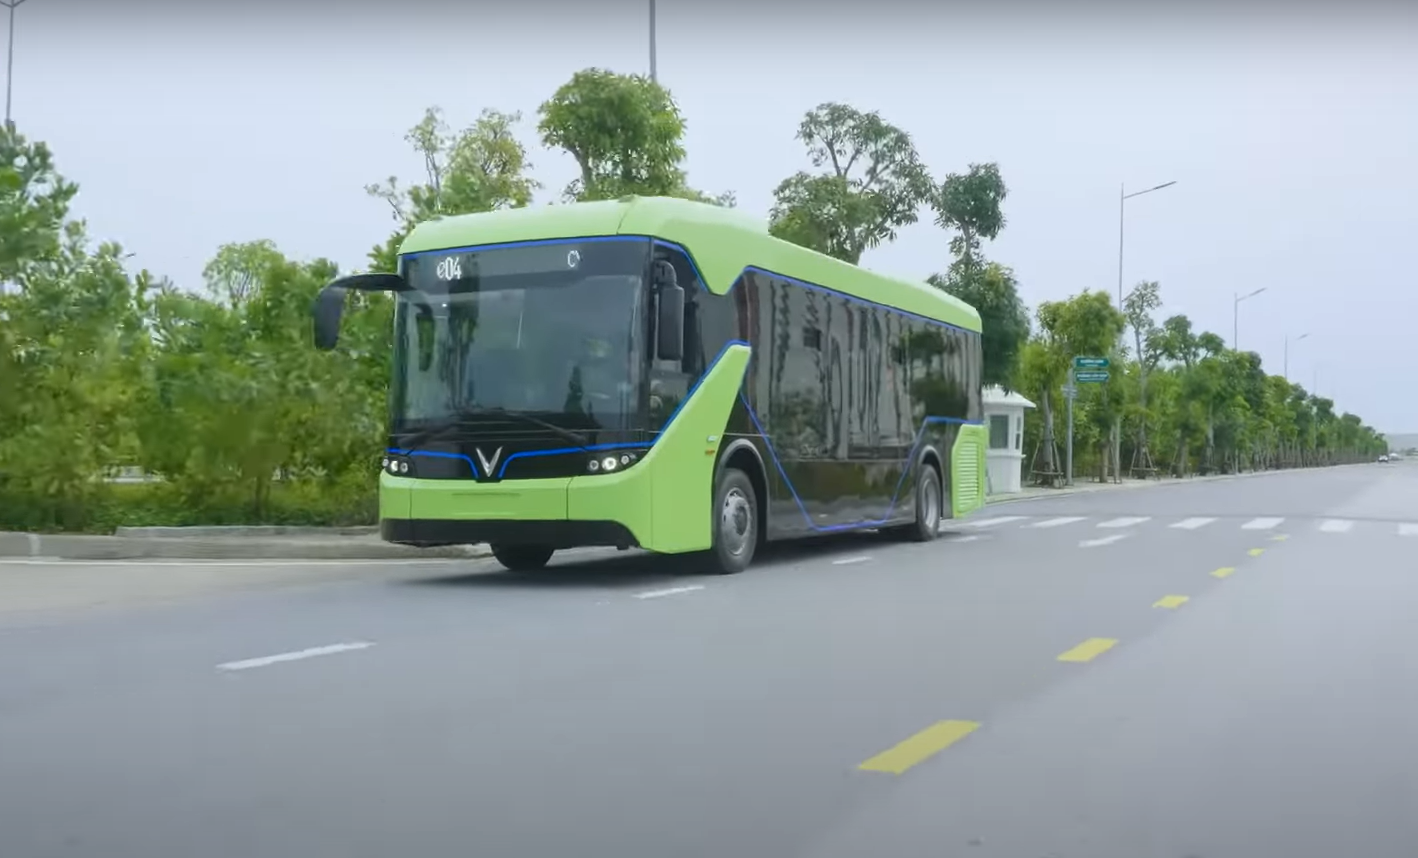 Quý II/2021 Hà Nội đưa vào khai thác 10 tuyến xe buýt điện